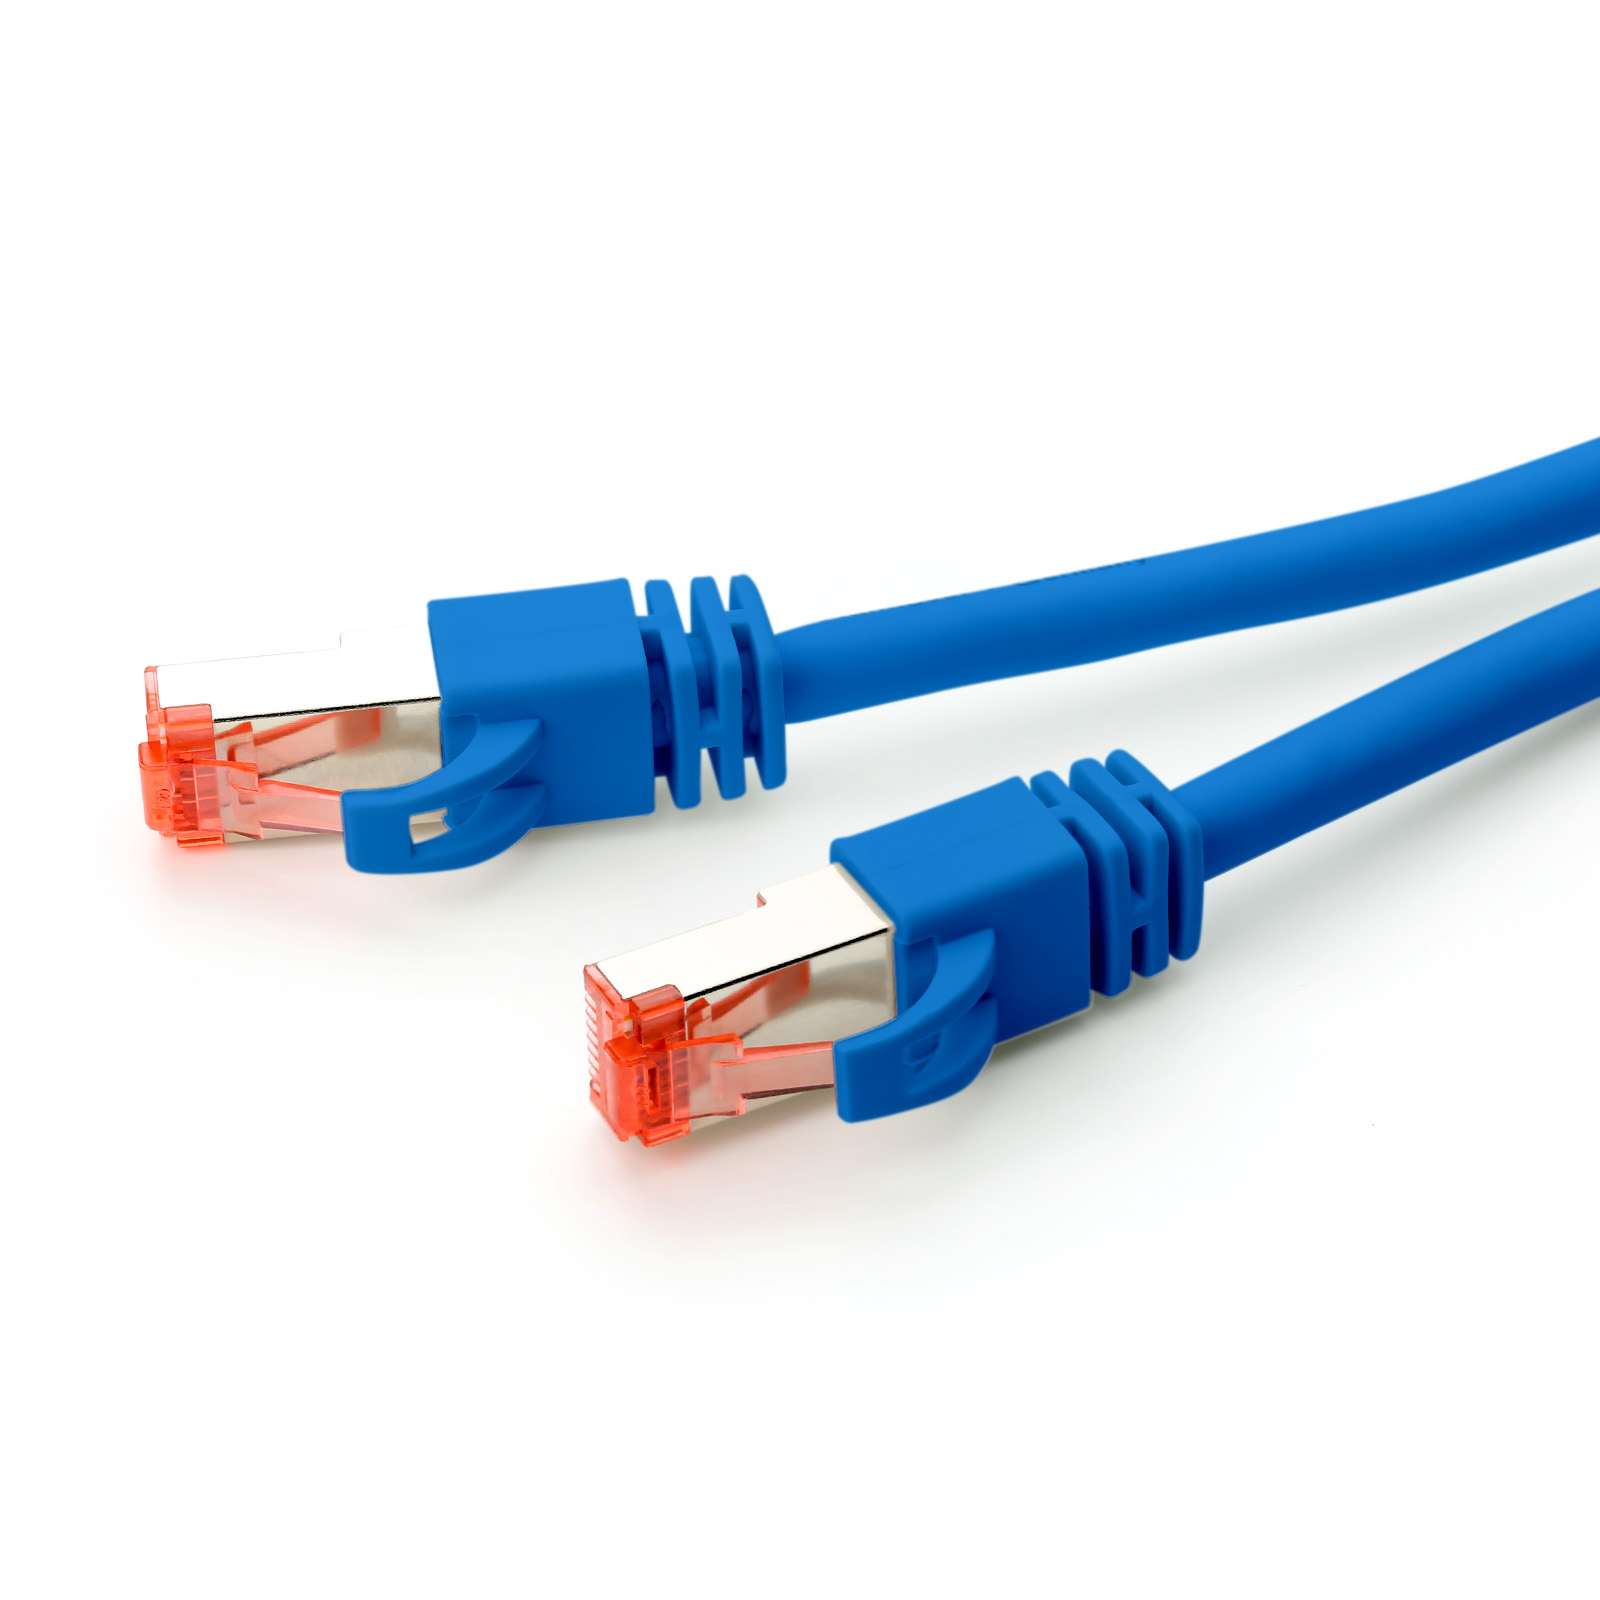 CSL 1m Patchkabel, Cat7 blau Netzwerkkabel